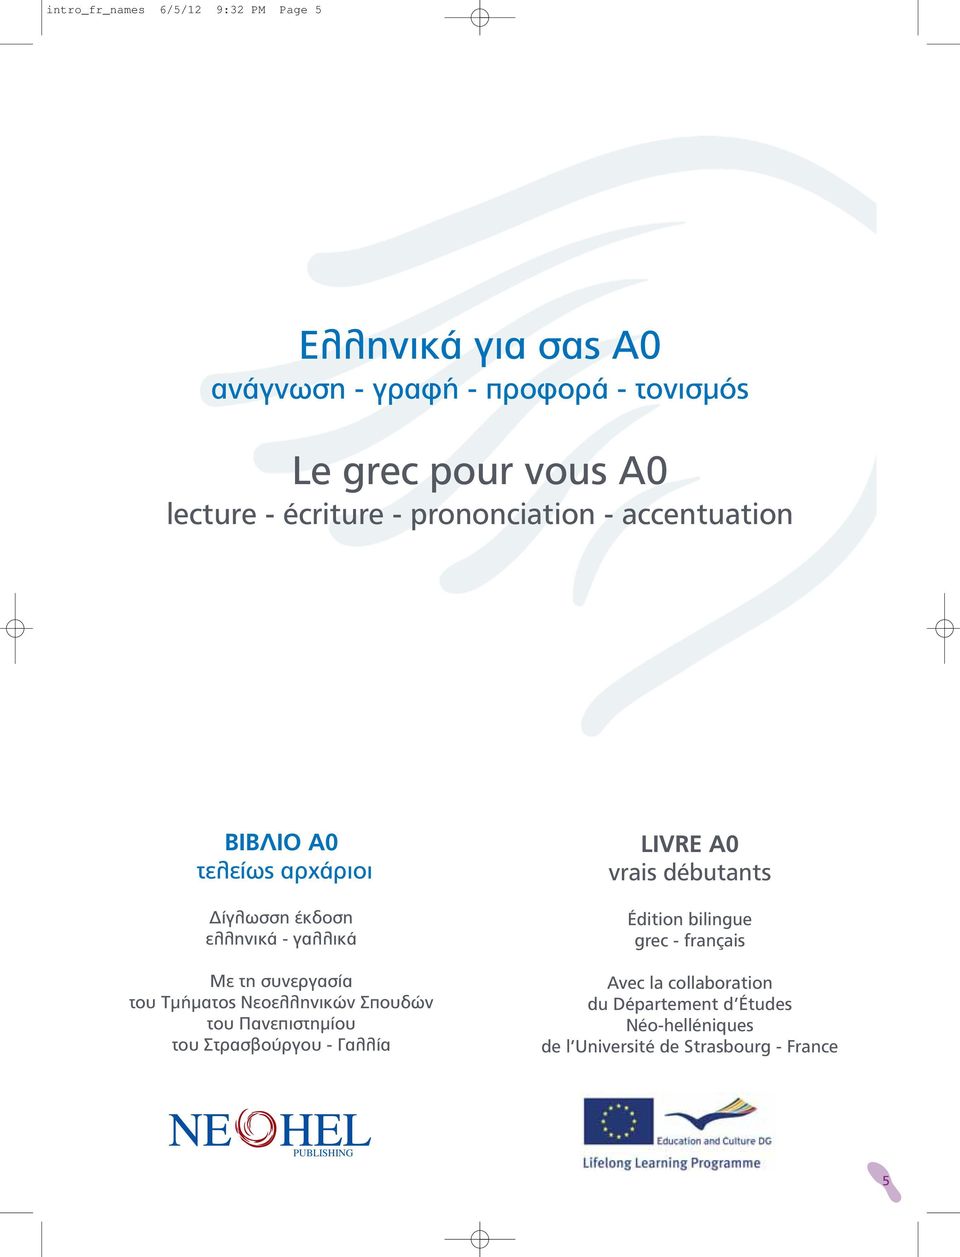 Τμήματος Νεοελληνικών Σπουδών του Πανεπιστημίου του Στρασβούργου - Γαλλία LIVRE Α0 vrais débutants Édition bilingue grec -